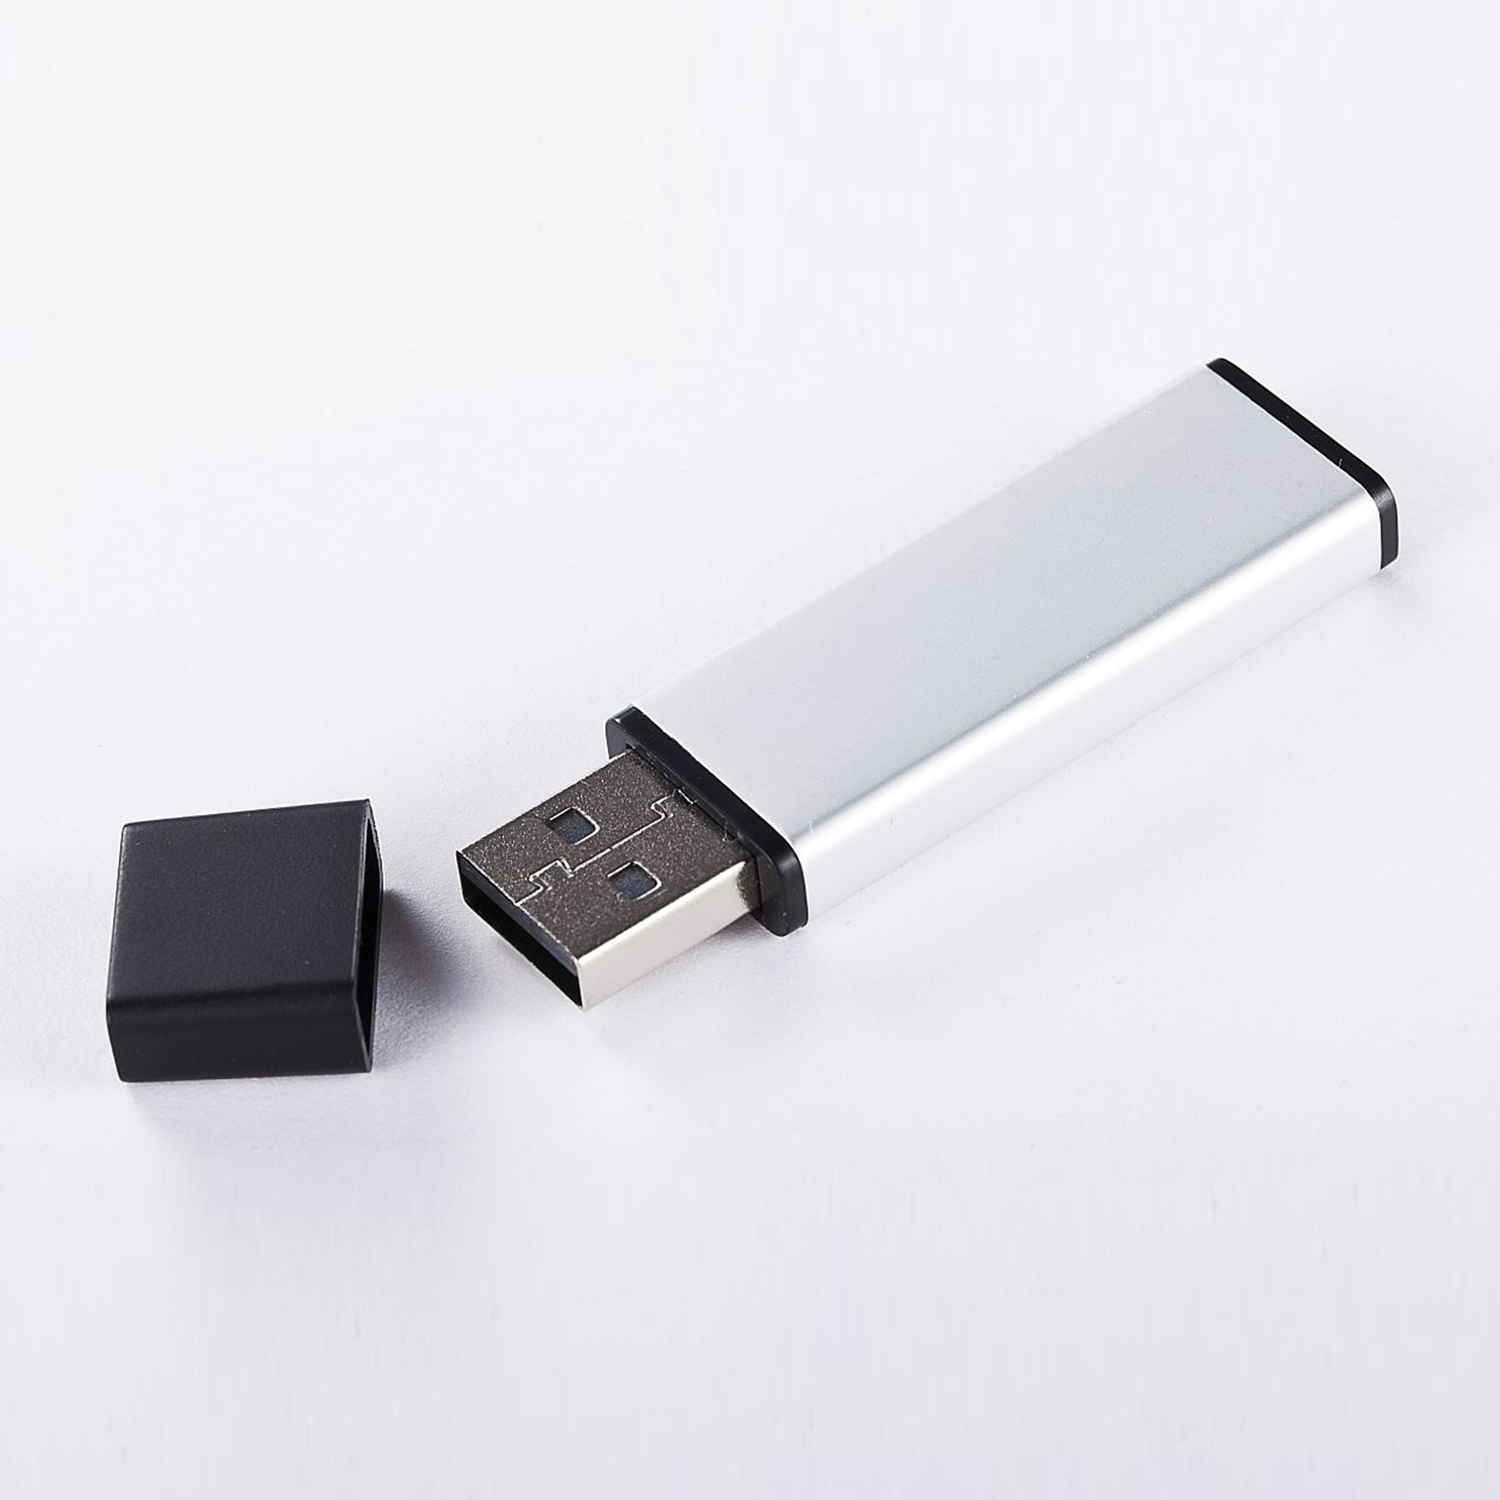 2 USB 2.0 - GB) USB GB XLYNE 2 (ALUMINIUM, Stick